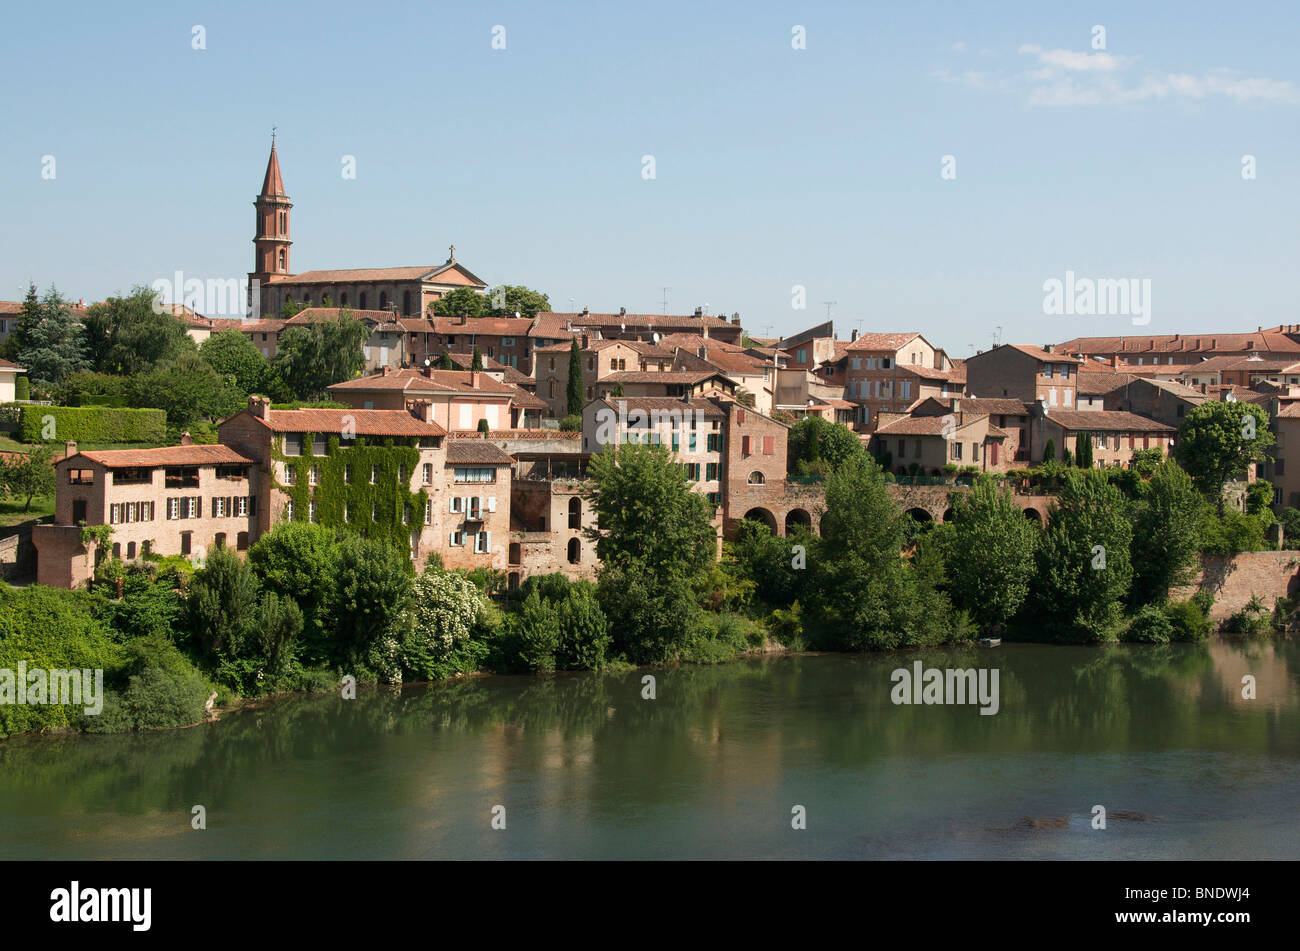 Ansicht von Albi, Frankreich - über den Fluss Tarn, der schönen historischen Stadt Albi, Frankreich Stockfoto